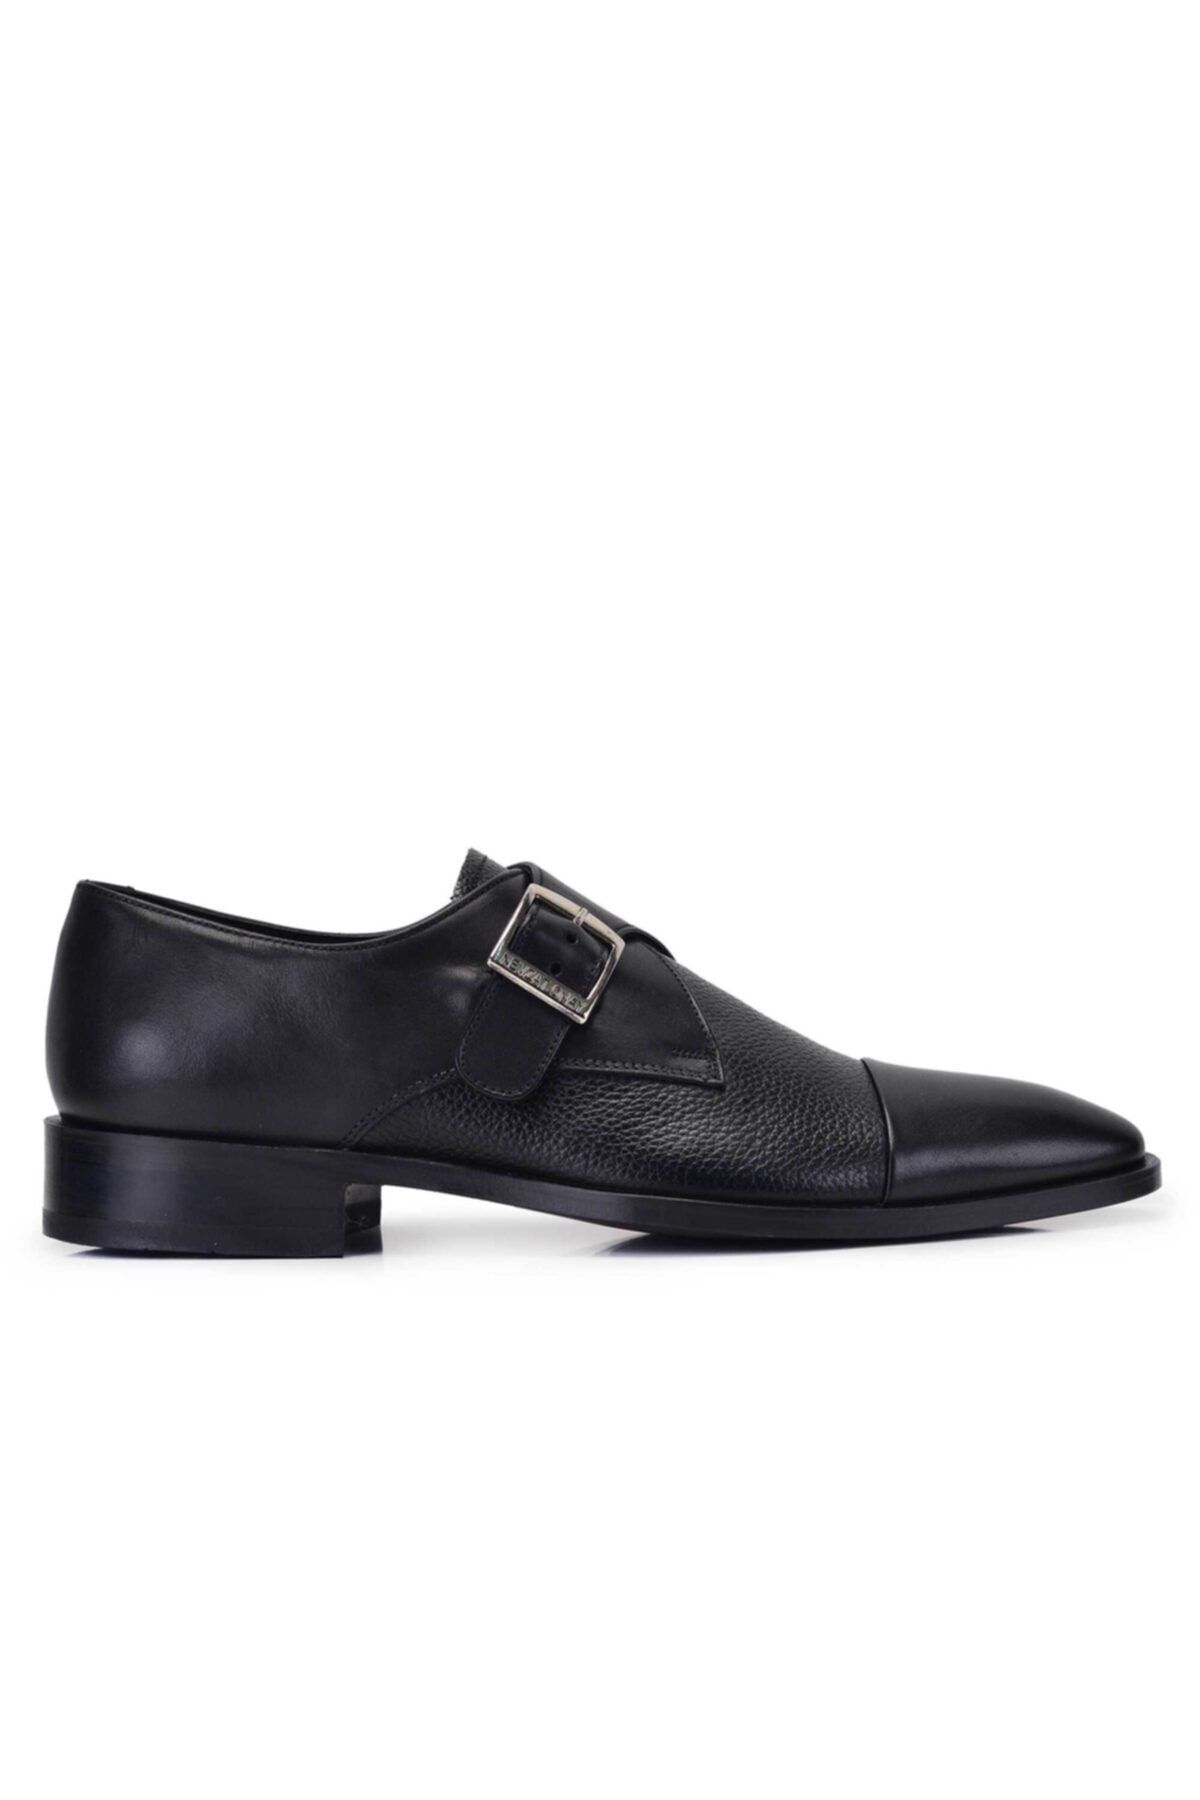 Nevzat Onay Hakiki Deri Siyah Klasik Loafer Kösele Erkek Ayakkabı -11557-